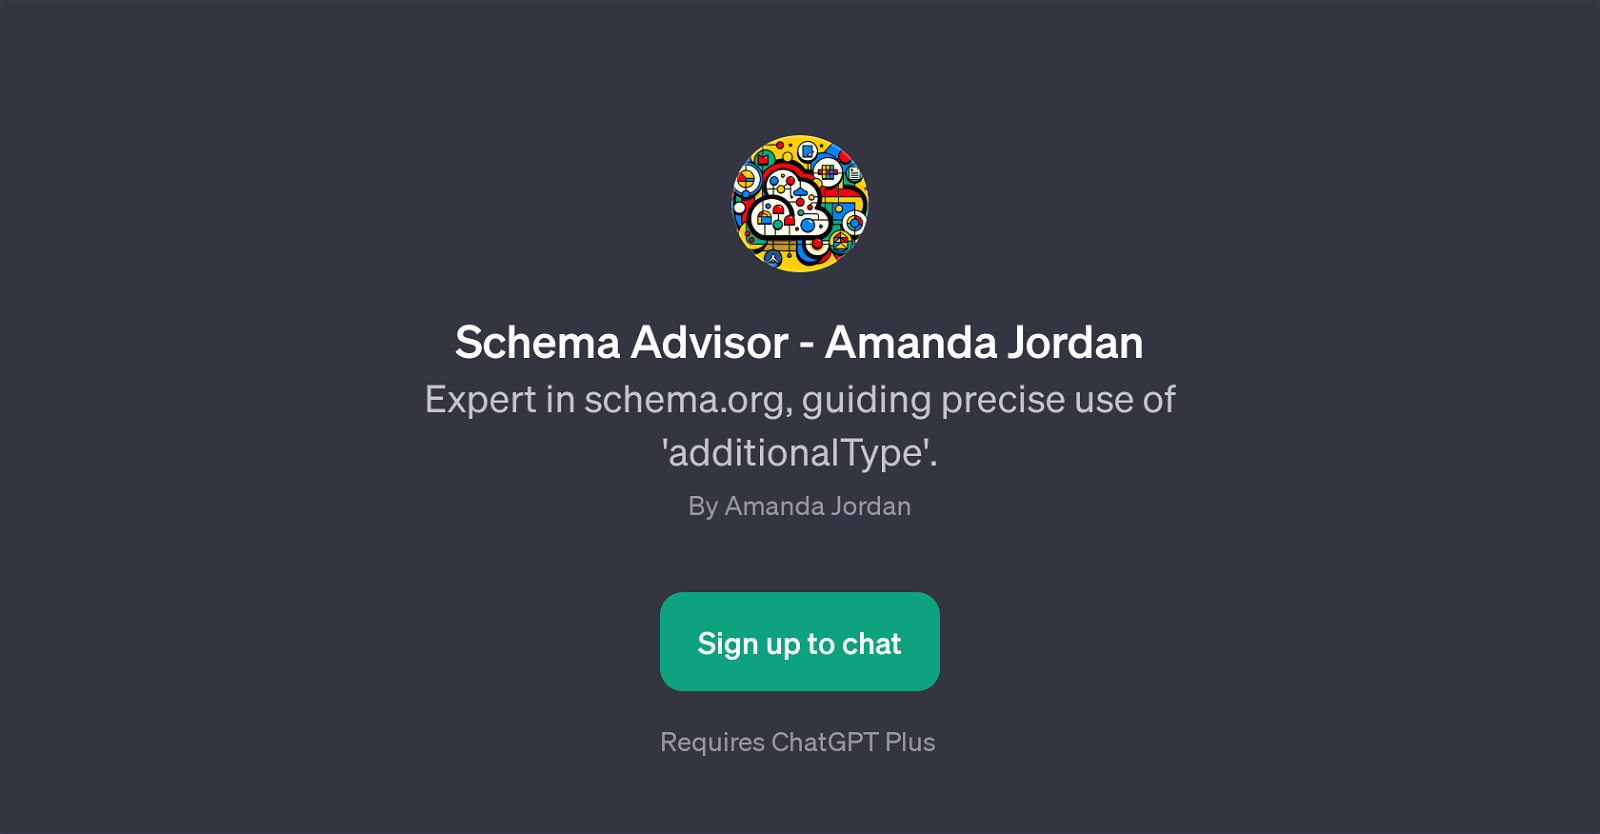 Schema Advisor - Amanda Jordan website